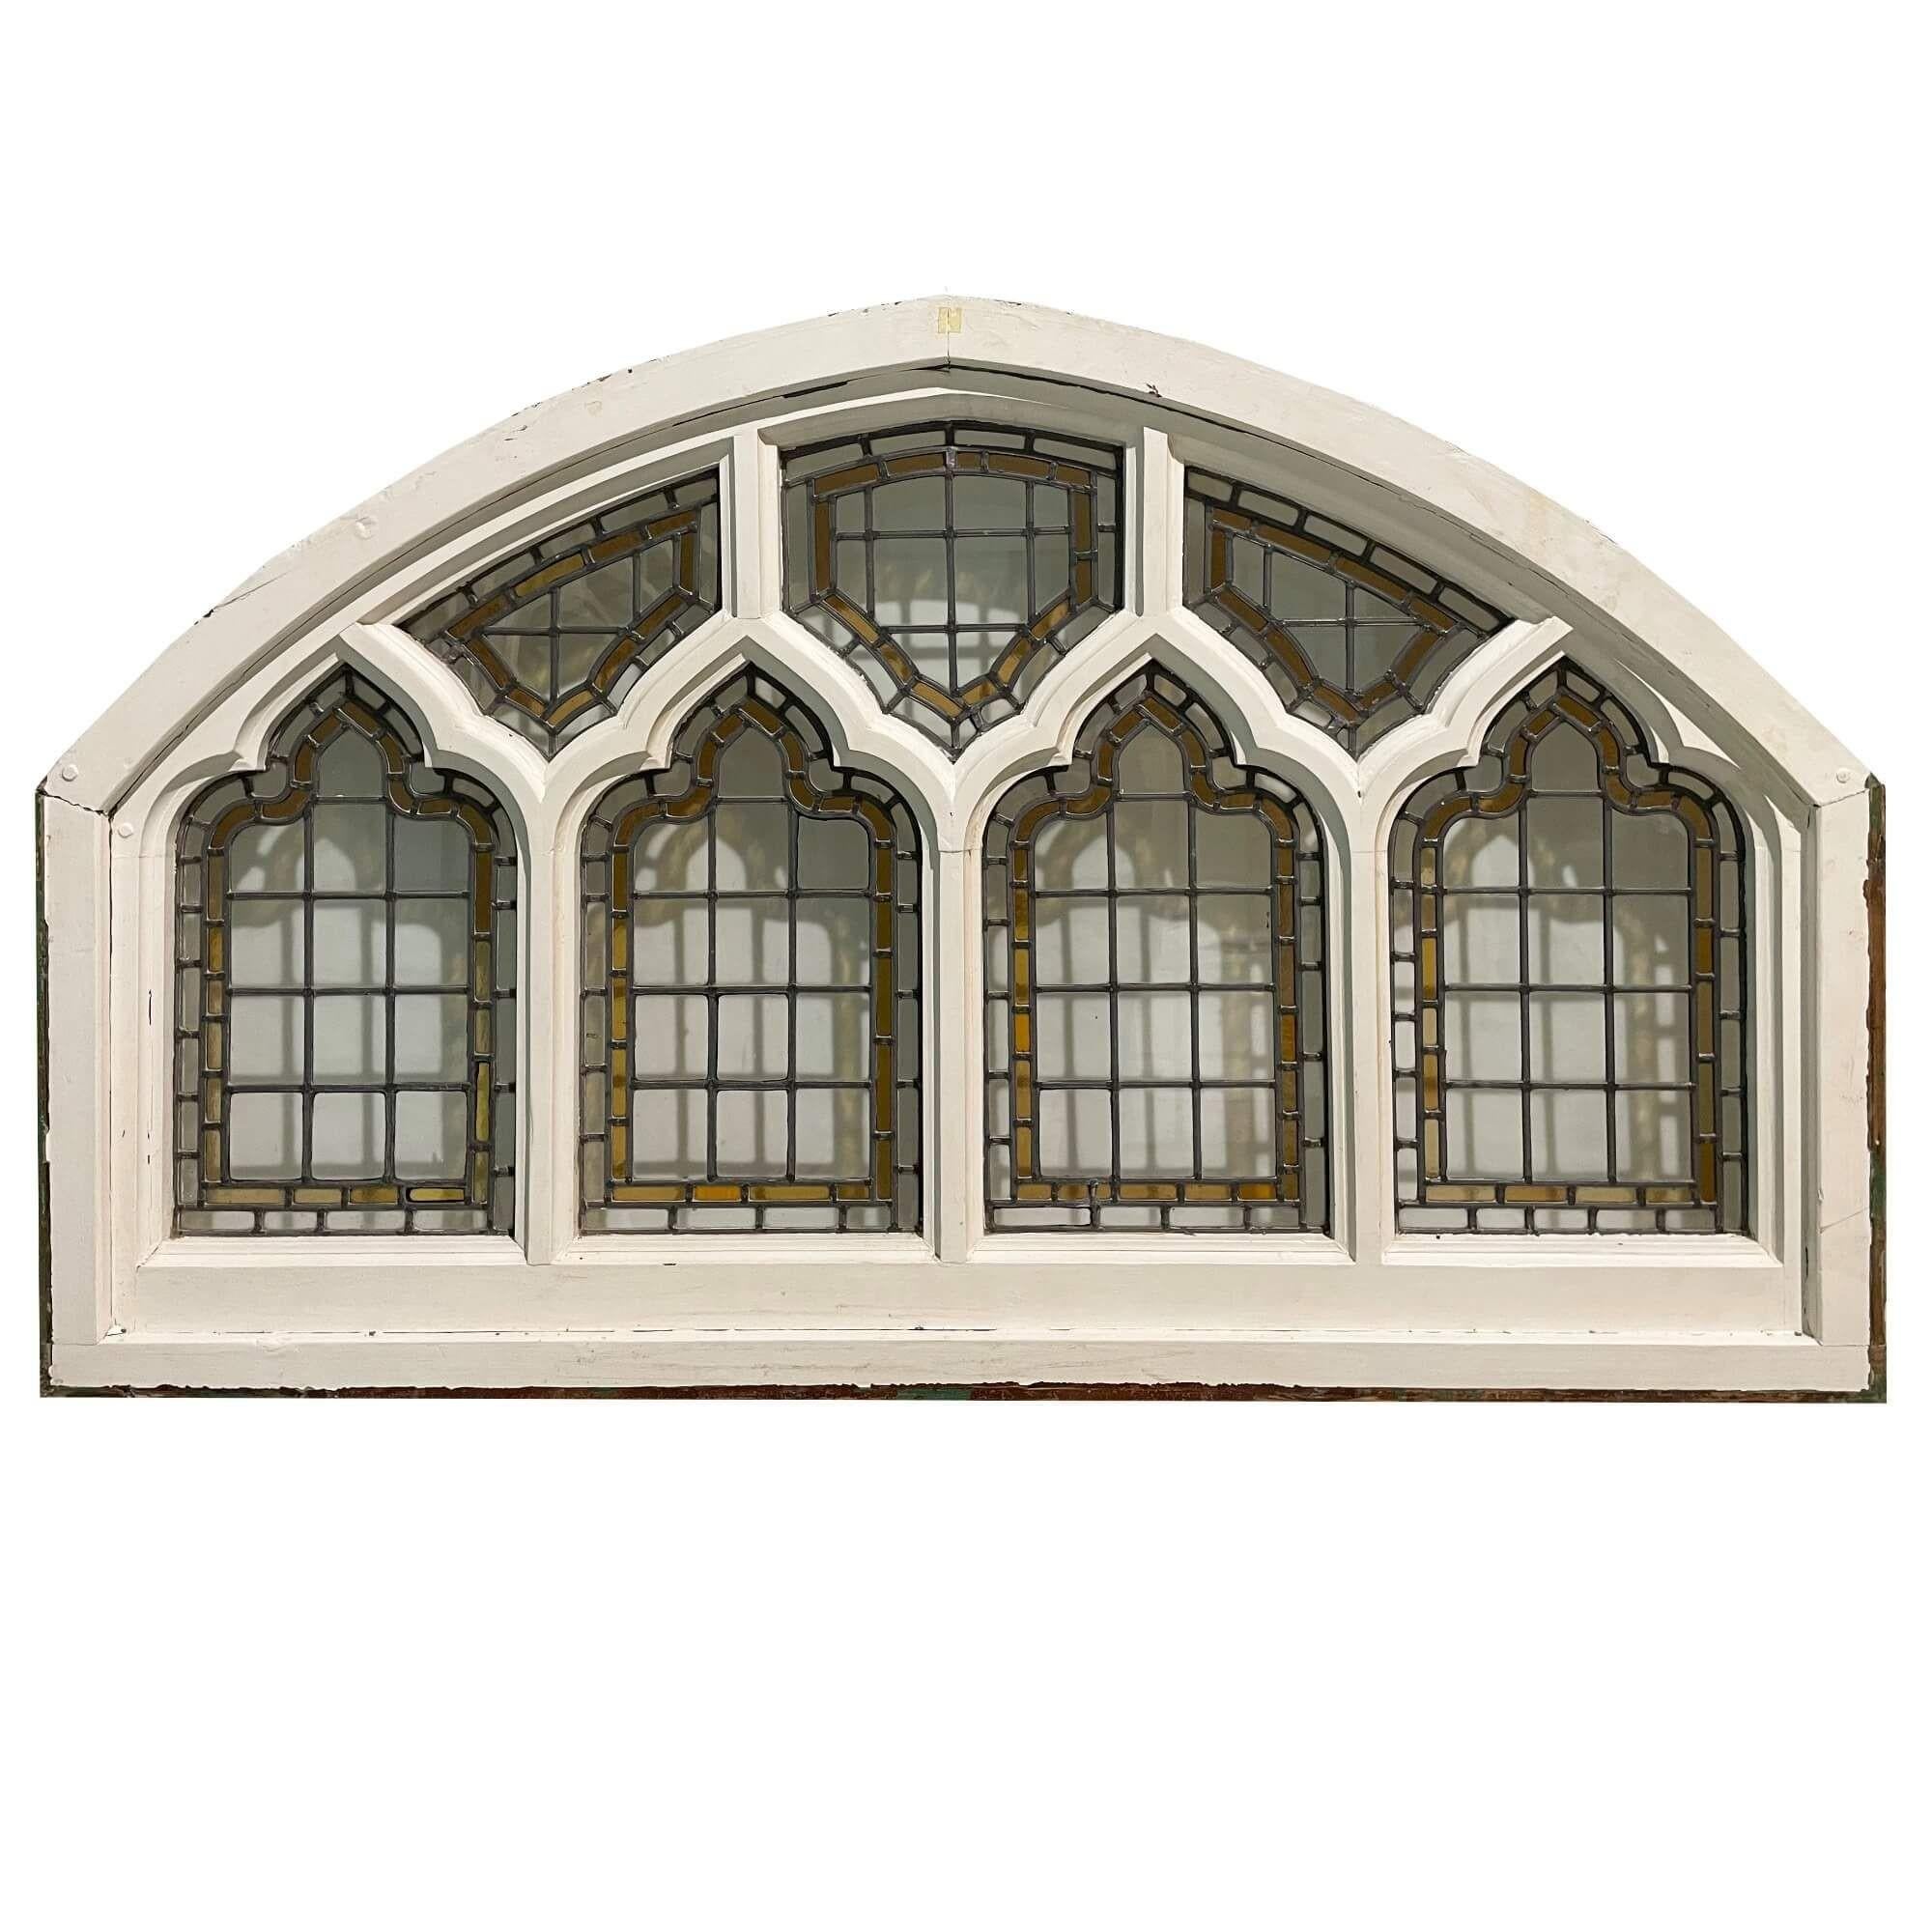 Ein bleiverglastes Fenster im kirchlichen Stil aus dem Jahr 1890. Dieses gewölbte Meisterwerk stammt aus einem Privathaus in Brighton und war zuvor der Stolz einer Kapelle. Das Fenster besteht aus Weichholz mit einem Rahmen aus lackiertem